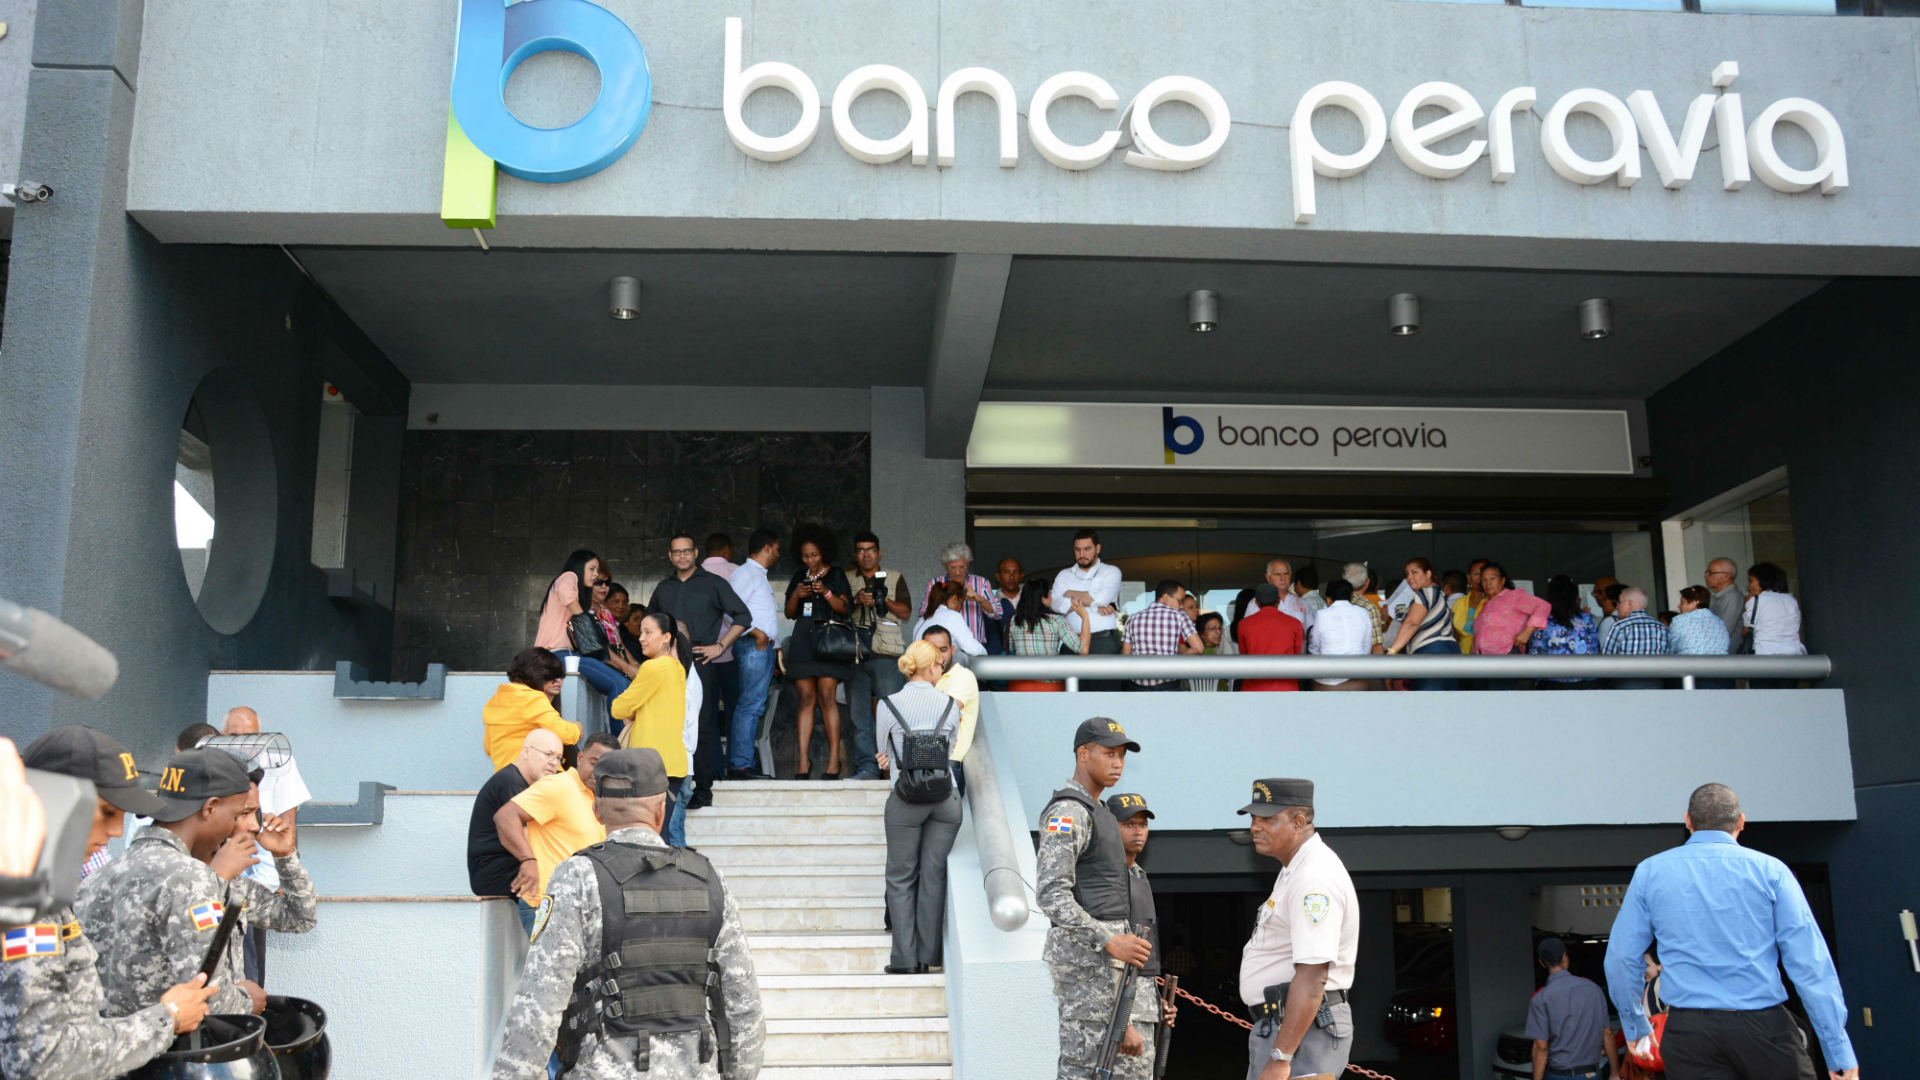 Conoce a los seis venezolanos acusados en República Dominicana por estafa y lavado de dinero en el Banco Peravia (+ FOTOS)